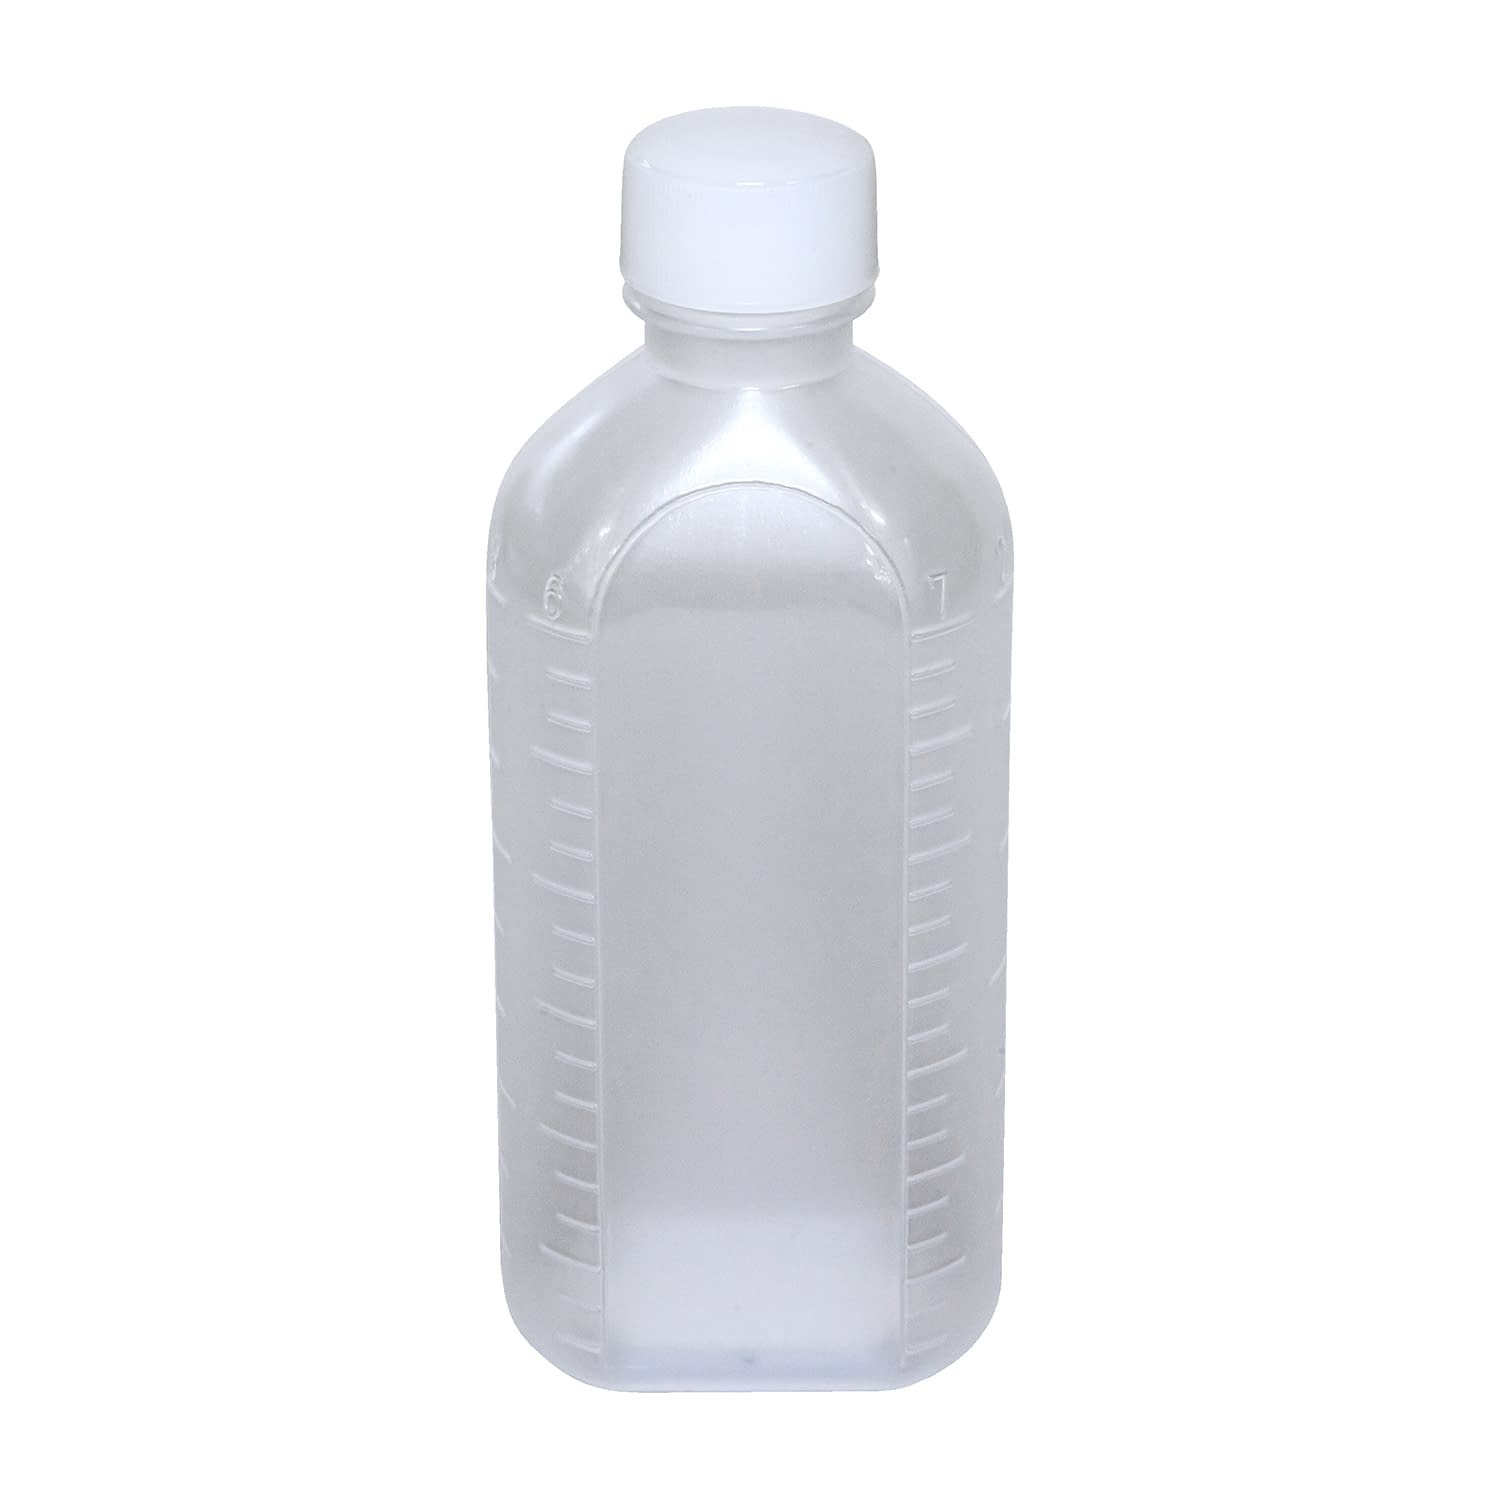 投薬瓶ＰＰＢ（滅菌済） 150CC(5ﾎﾝX30ﾌｸﾛｲﾘ) キャップ：白ＰＥ（基本色）150cc白（基本色）・PE【エムアイケミカル】FALSE(08-2855-04-01)